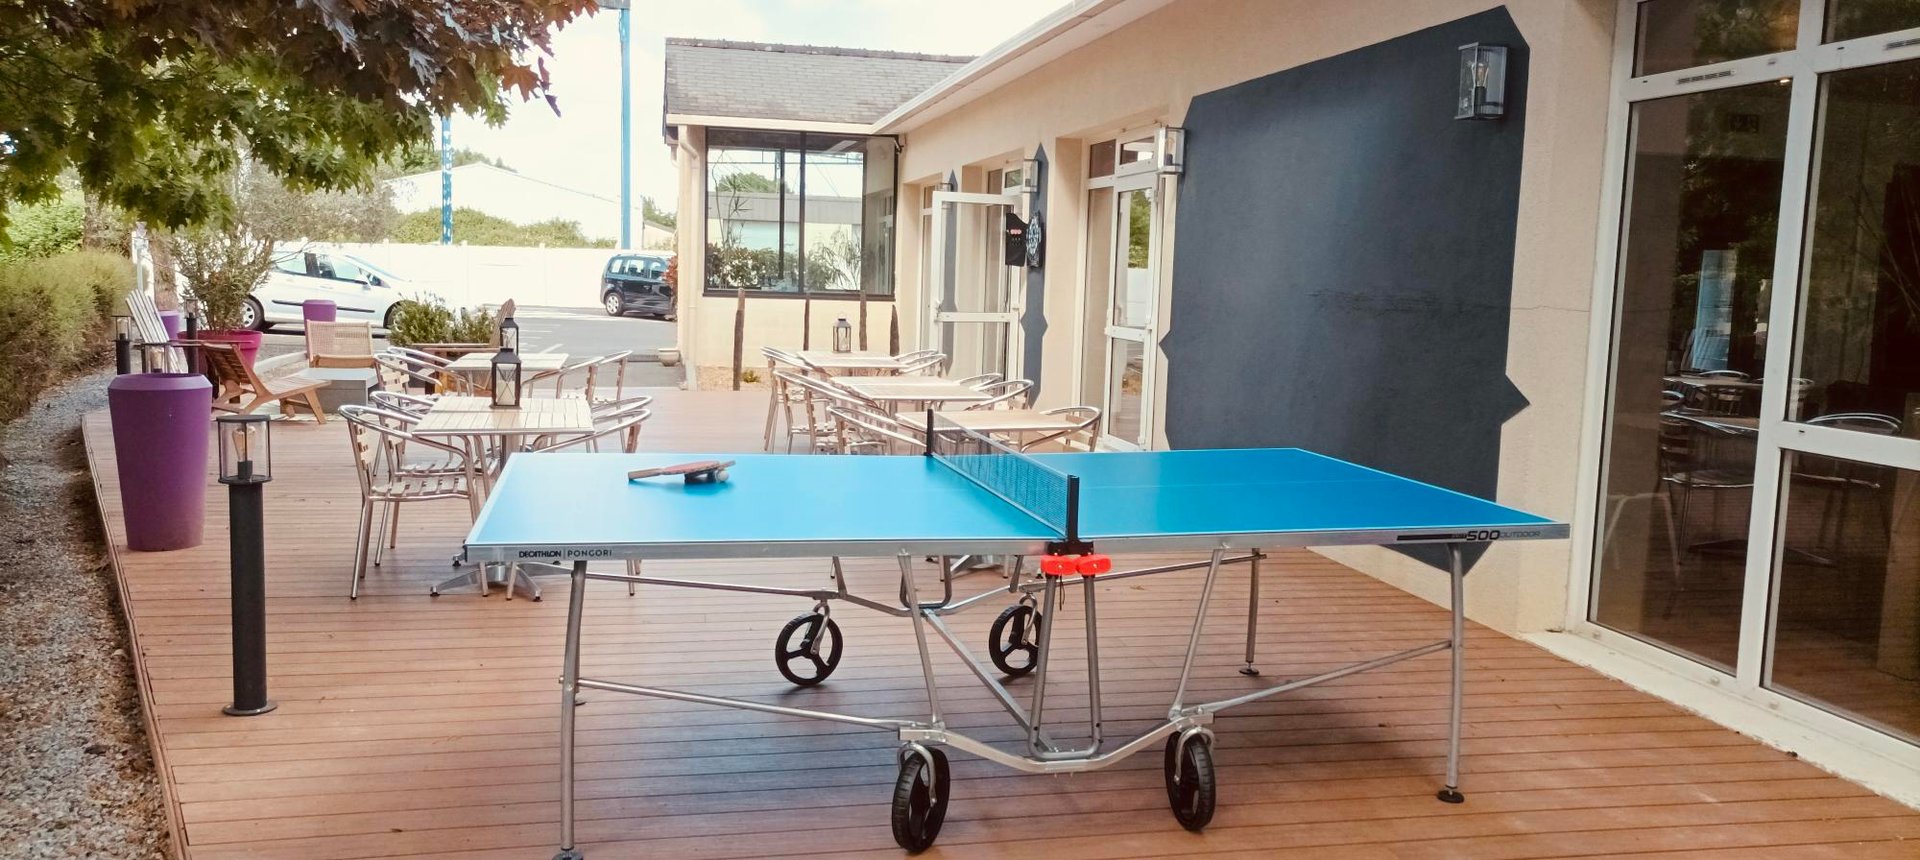 Hotel Le Village 49*** | Ping pong table | Les ponts de cé